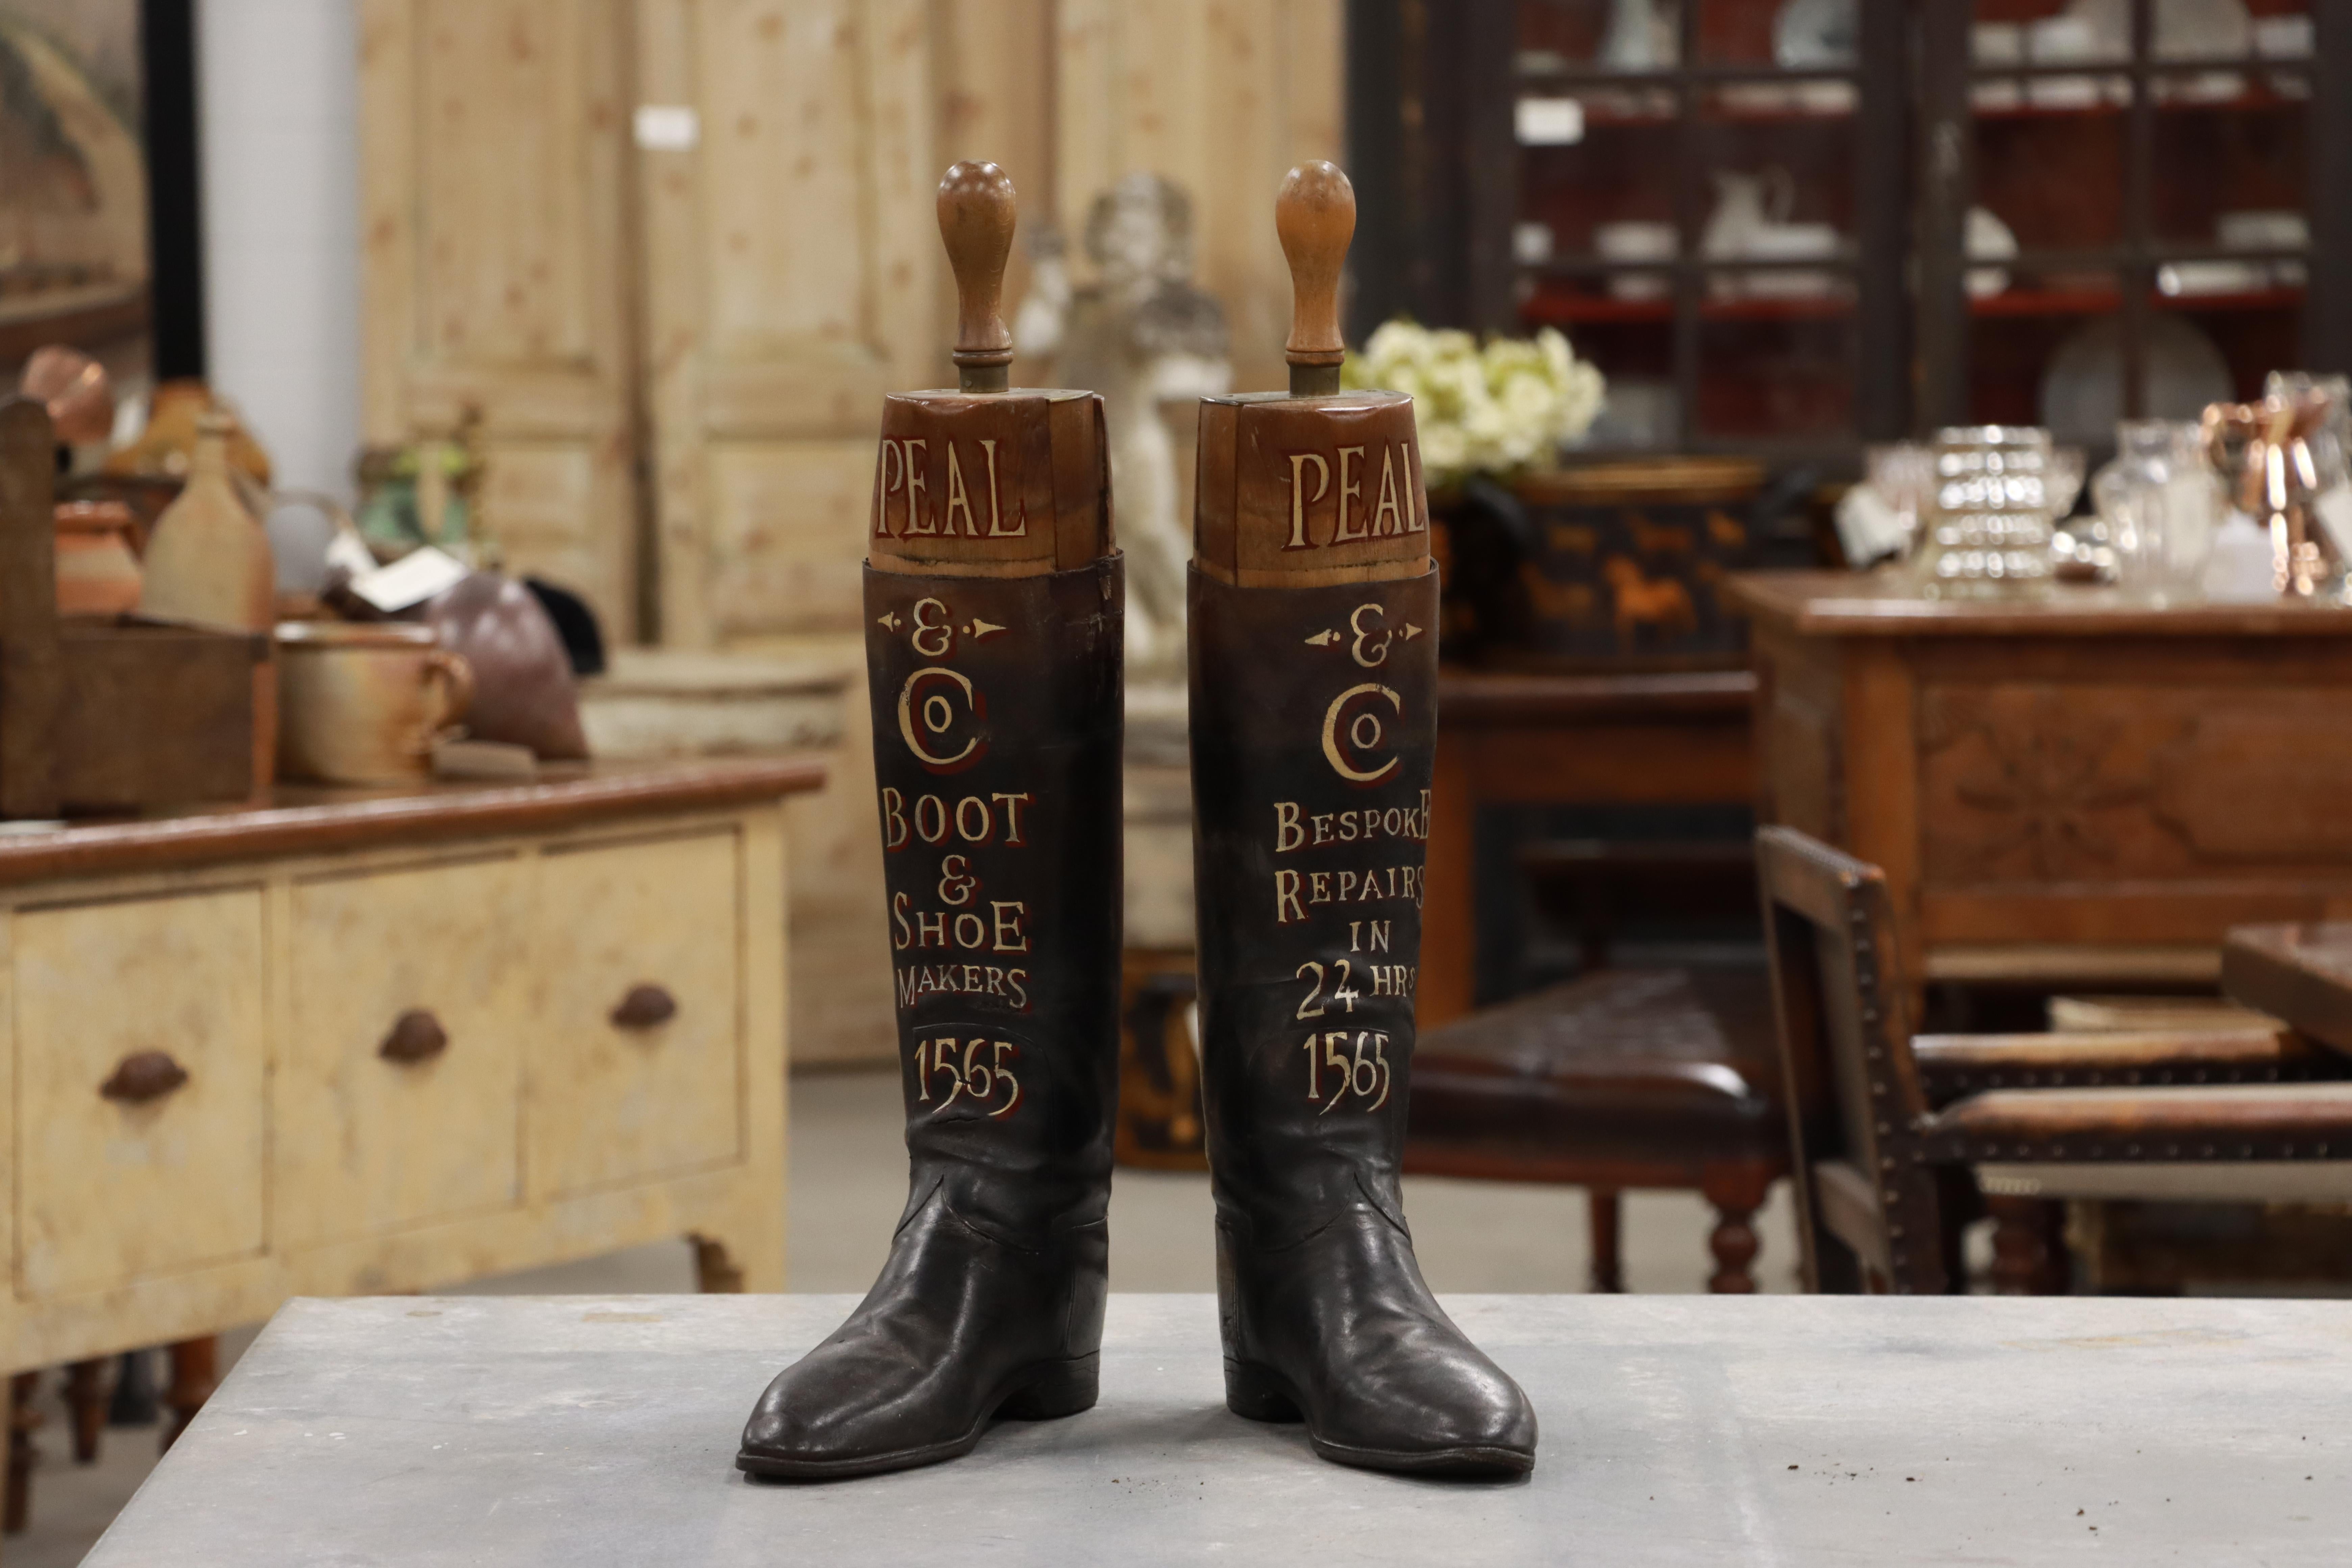 Ein Paar antike englische Lederreitstiefel mit ihren originalen Hartholzspänen. Beide Stiefel sind mit goldenen Lettern verziert, die für Peal & Co. werben (später angebracht). 

Peal stellte von 1565 bis 1965 in London Schuhe und Stiefel